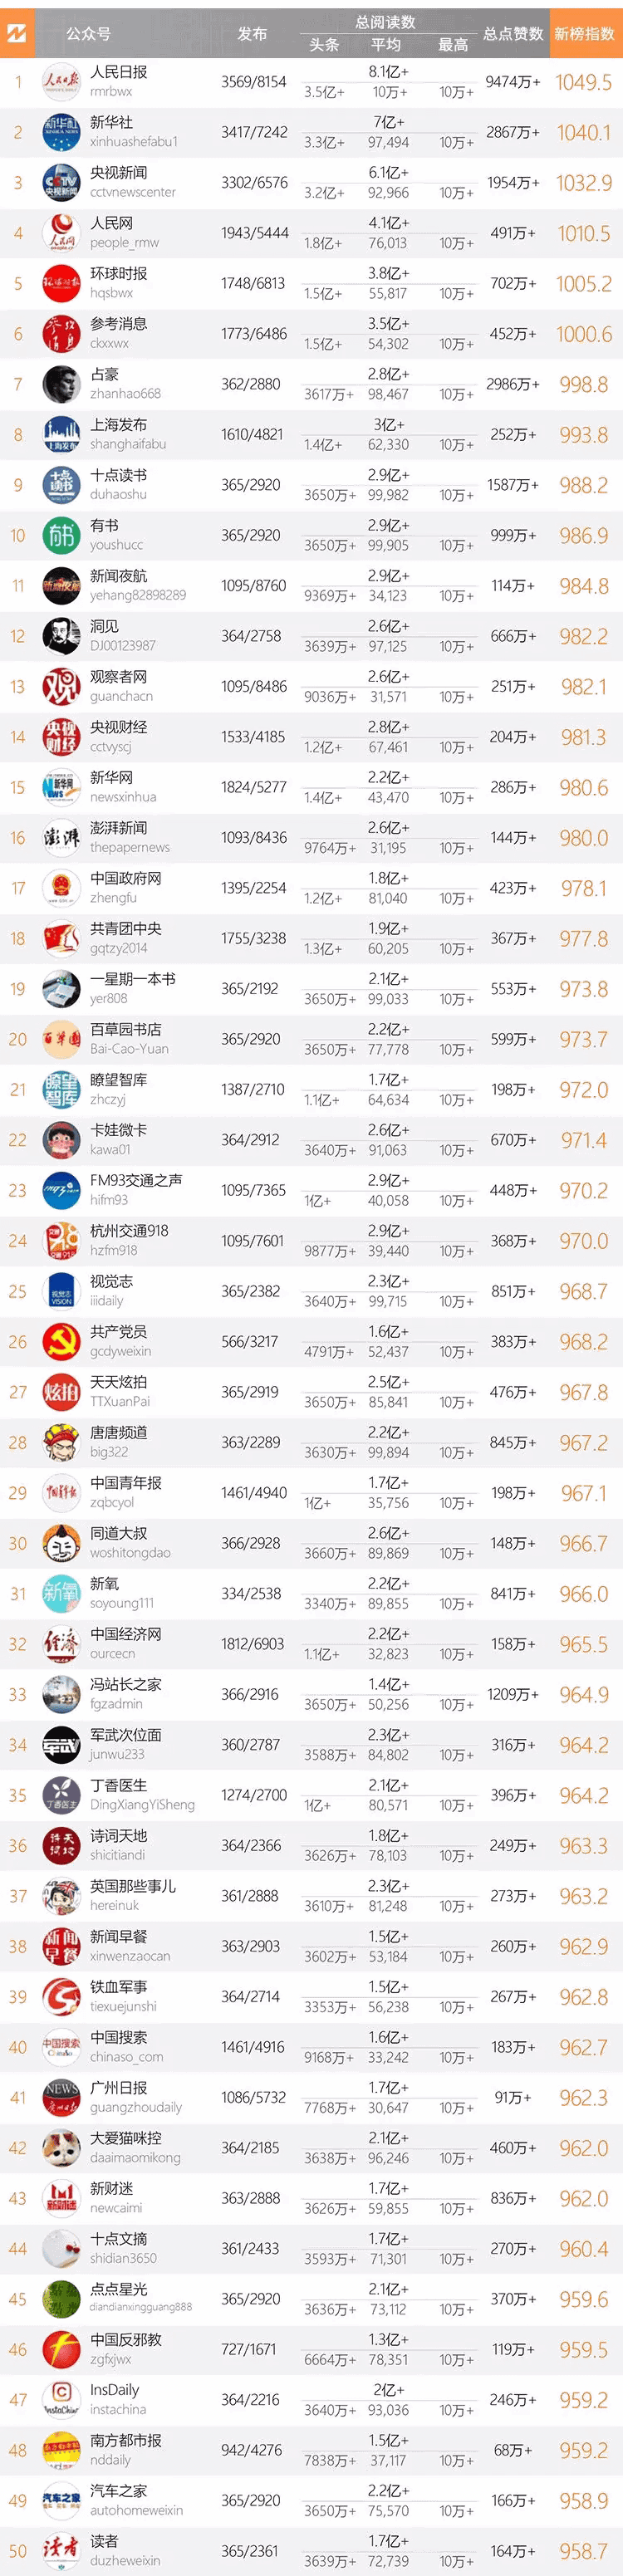 十大微信公众号排名榜-2018中国微信500强排名榜(阅读量排序)